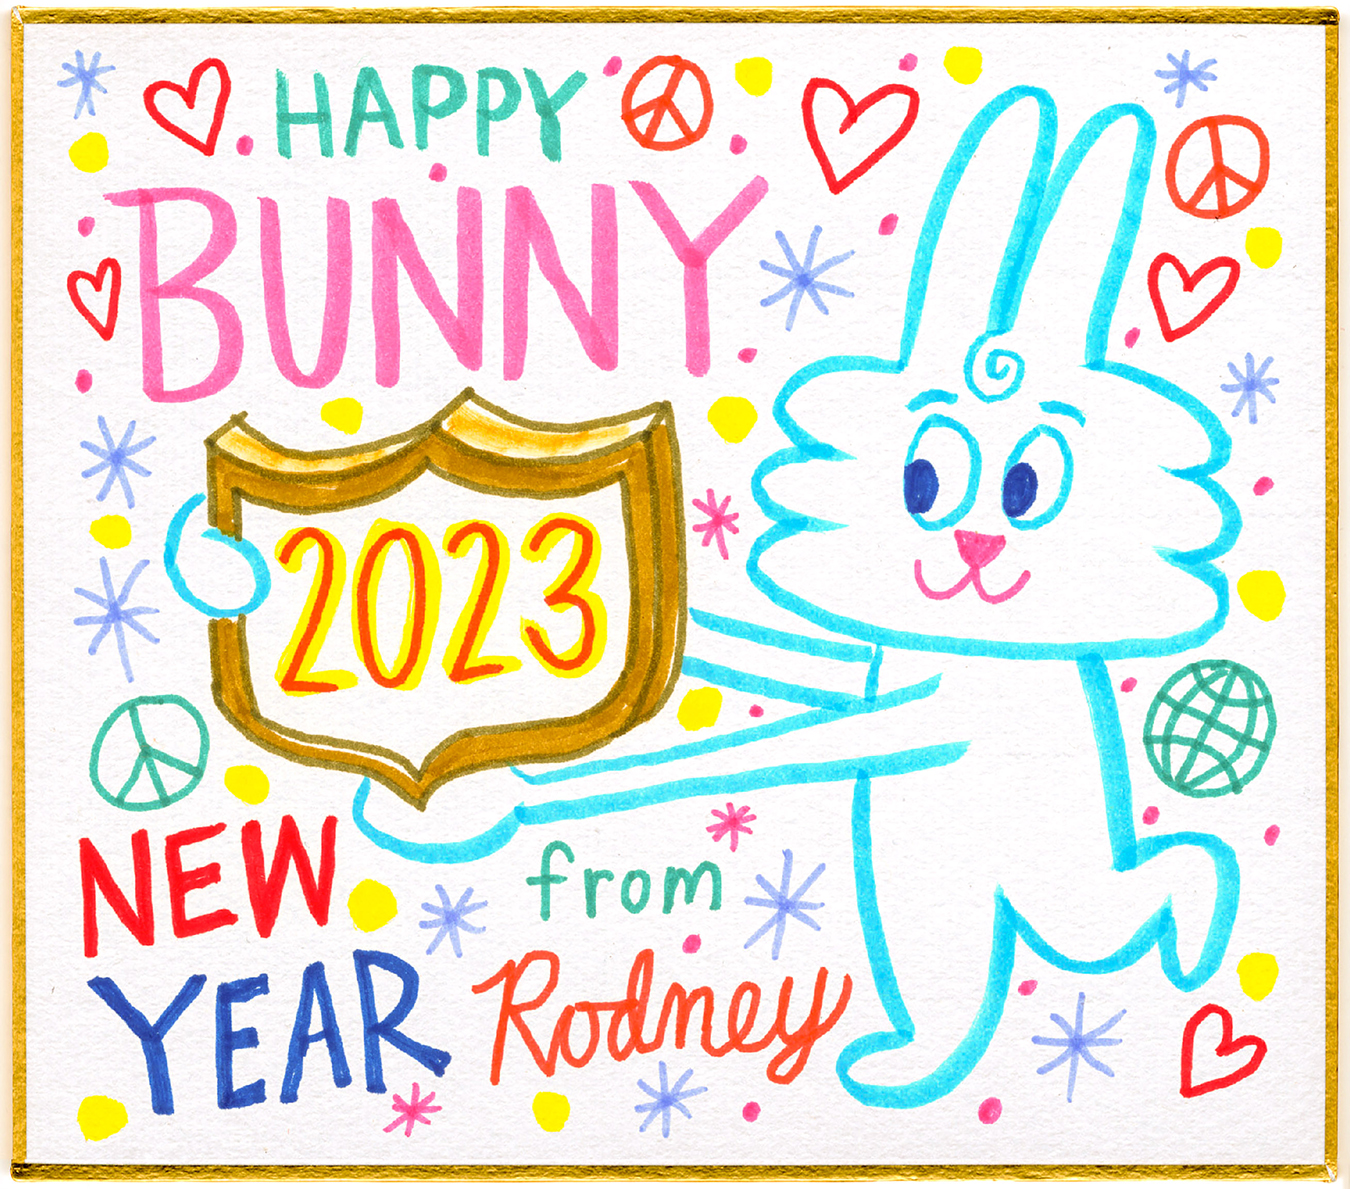 Happy Bunny Year! 2023